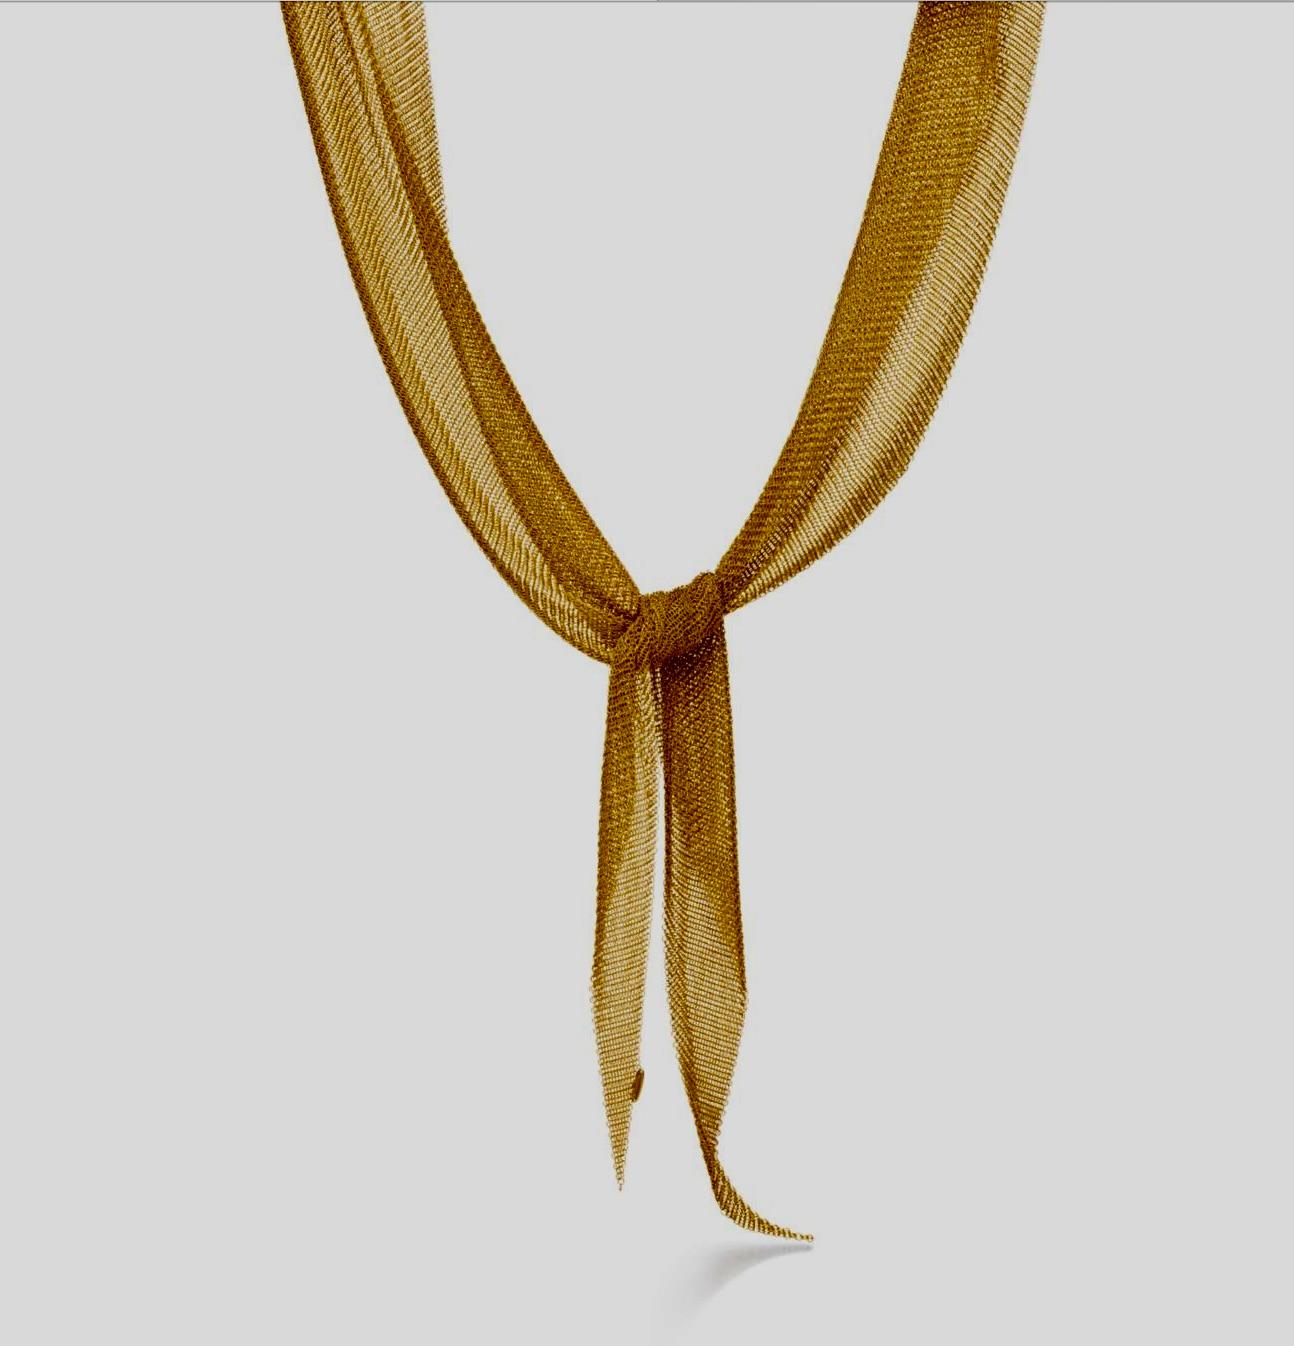 Sacarf Halskette von T&Co by Elsa Peretti
Die Form ist formbar und schmiegt sich ergonomisch an die Konturen des Körpers an. Schal-Halskette aus 18k Gold. Größe groß, 42